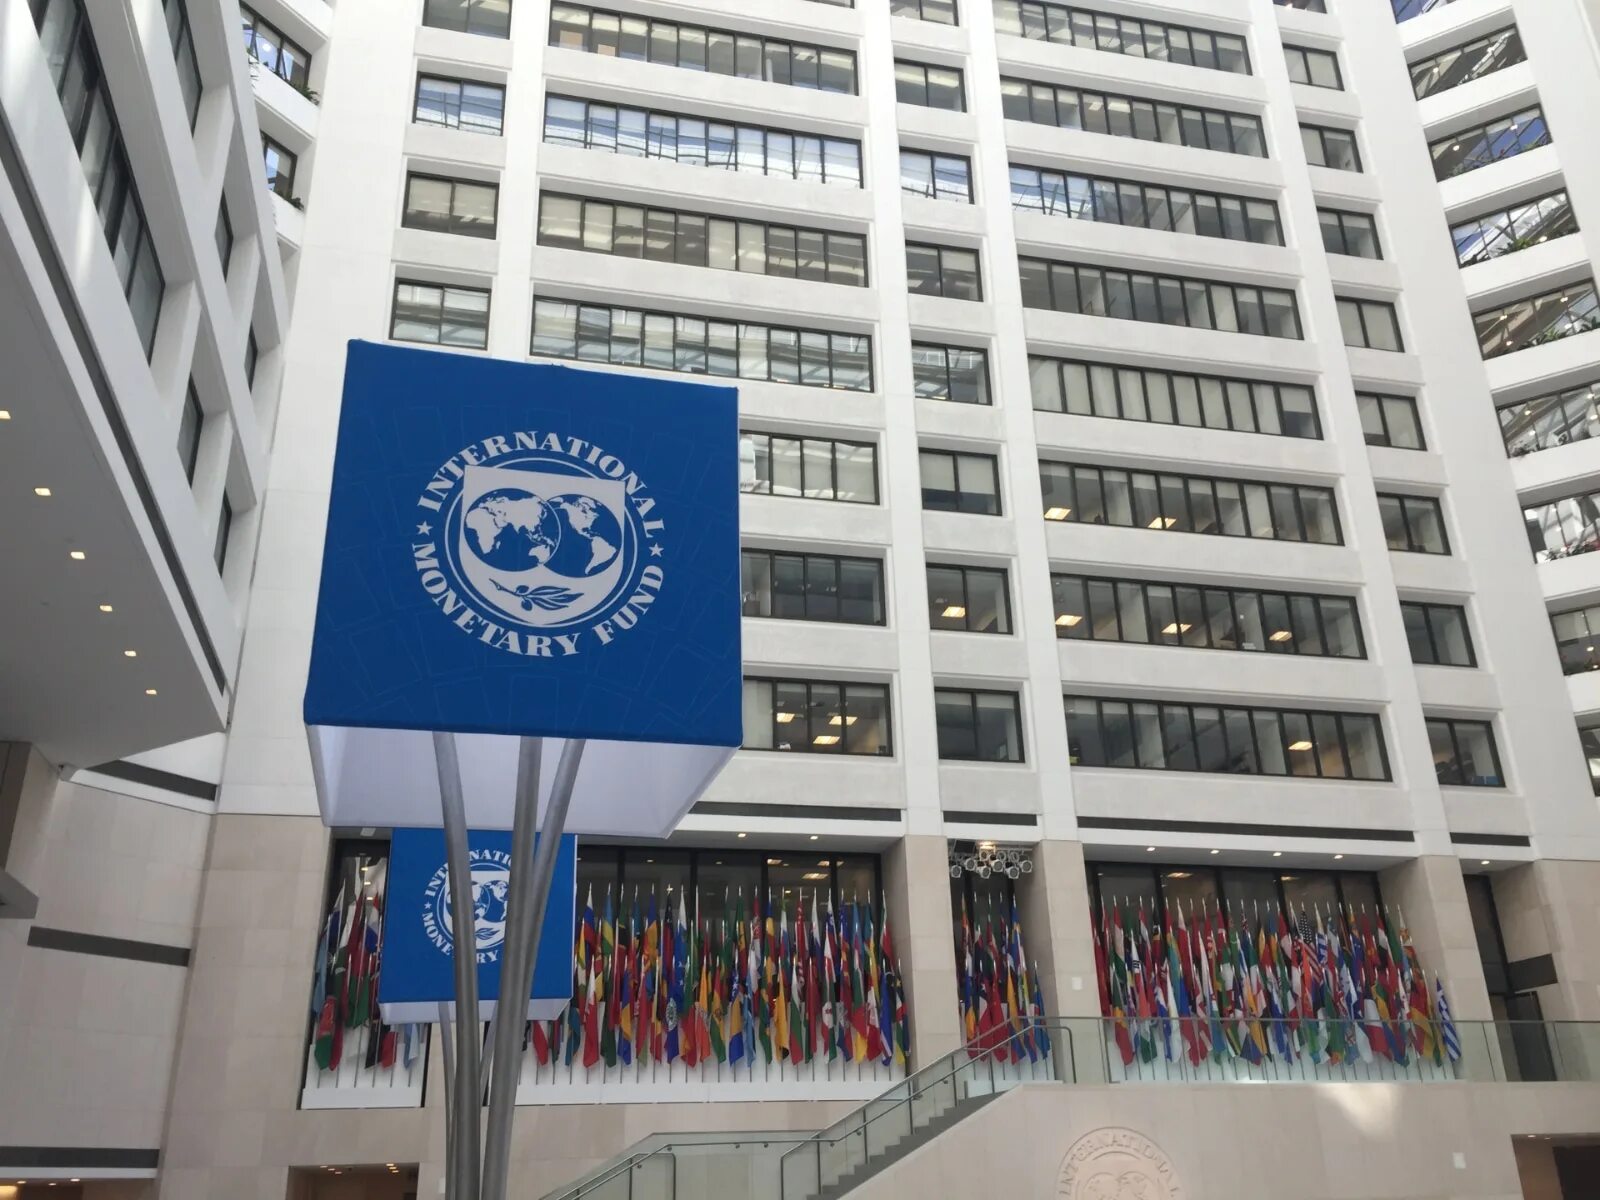 Международный фонд мвф. Штаб квартира МВФ В Вашингтоне. International monetary Fund (IMF). МВФ ООН. МВФ главное здание.